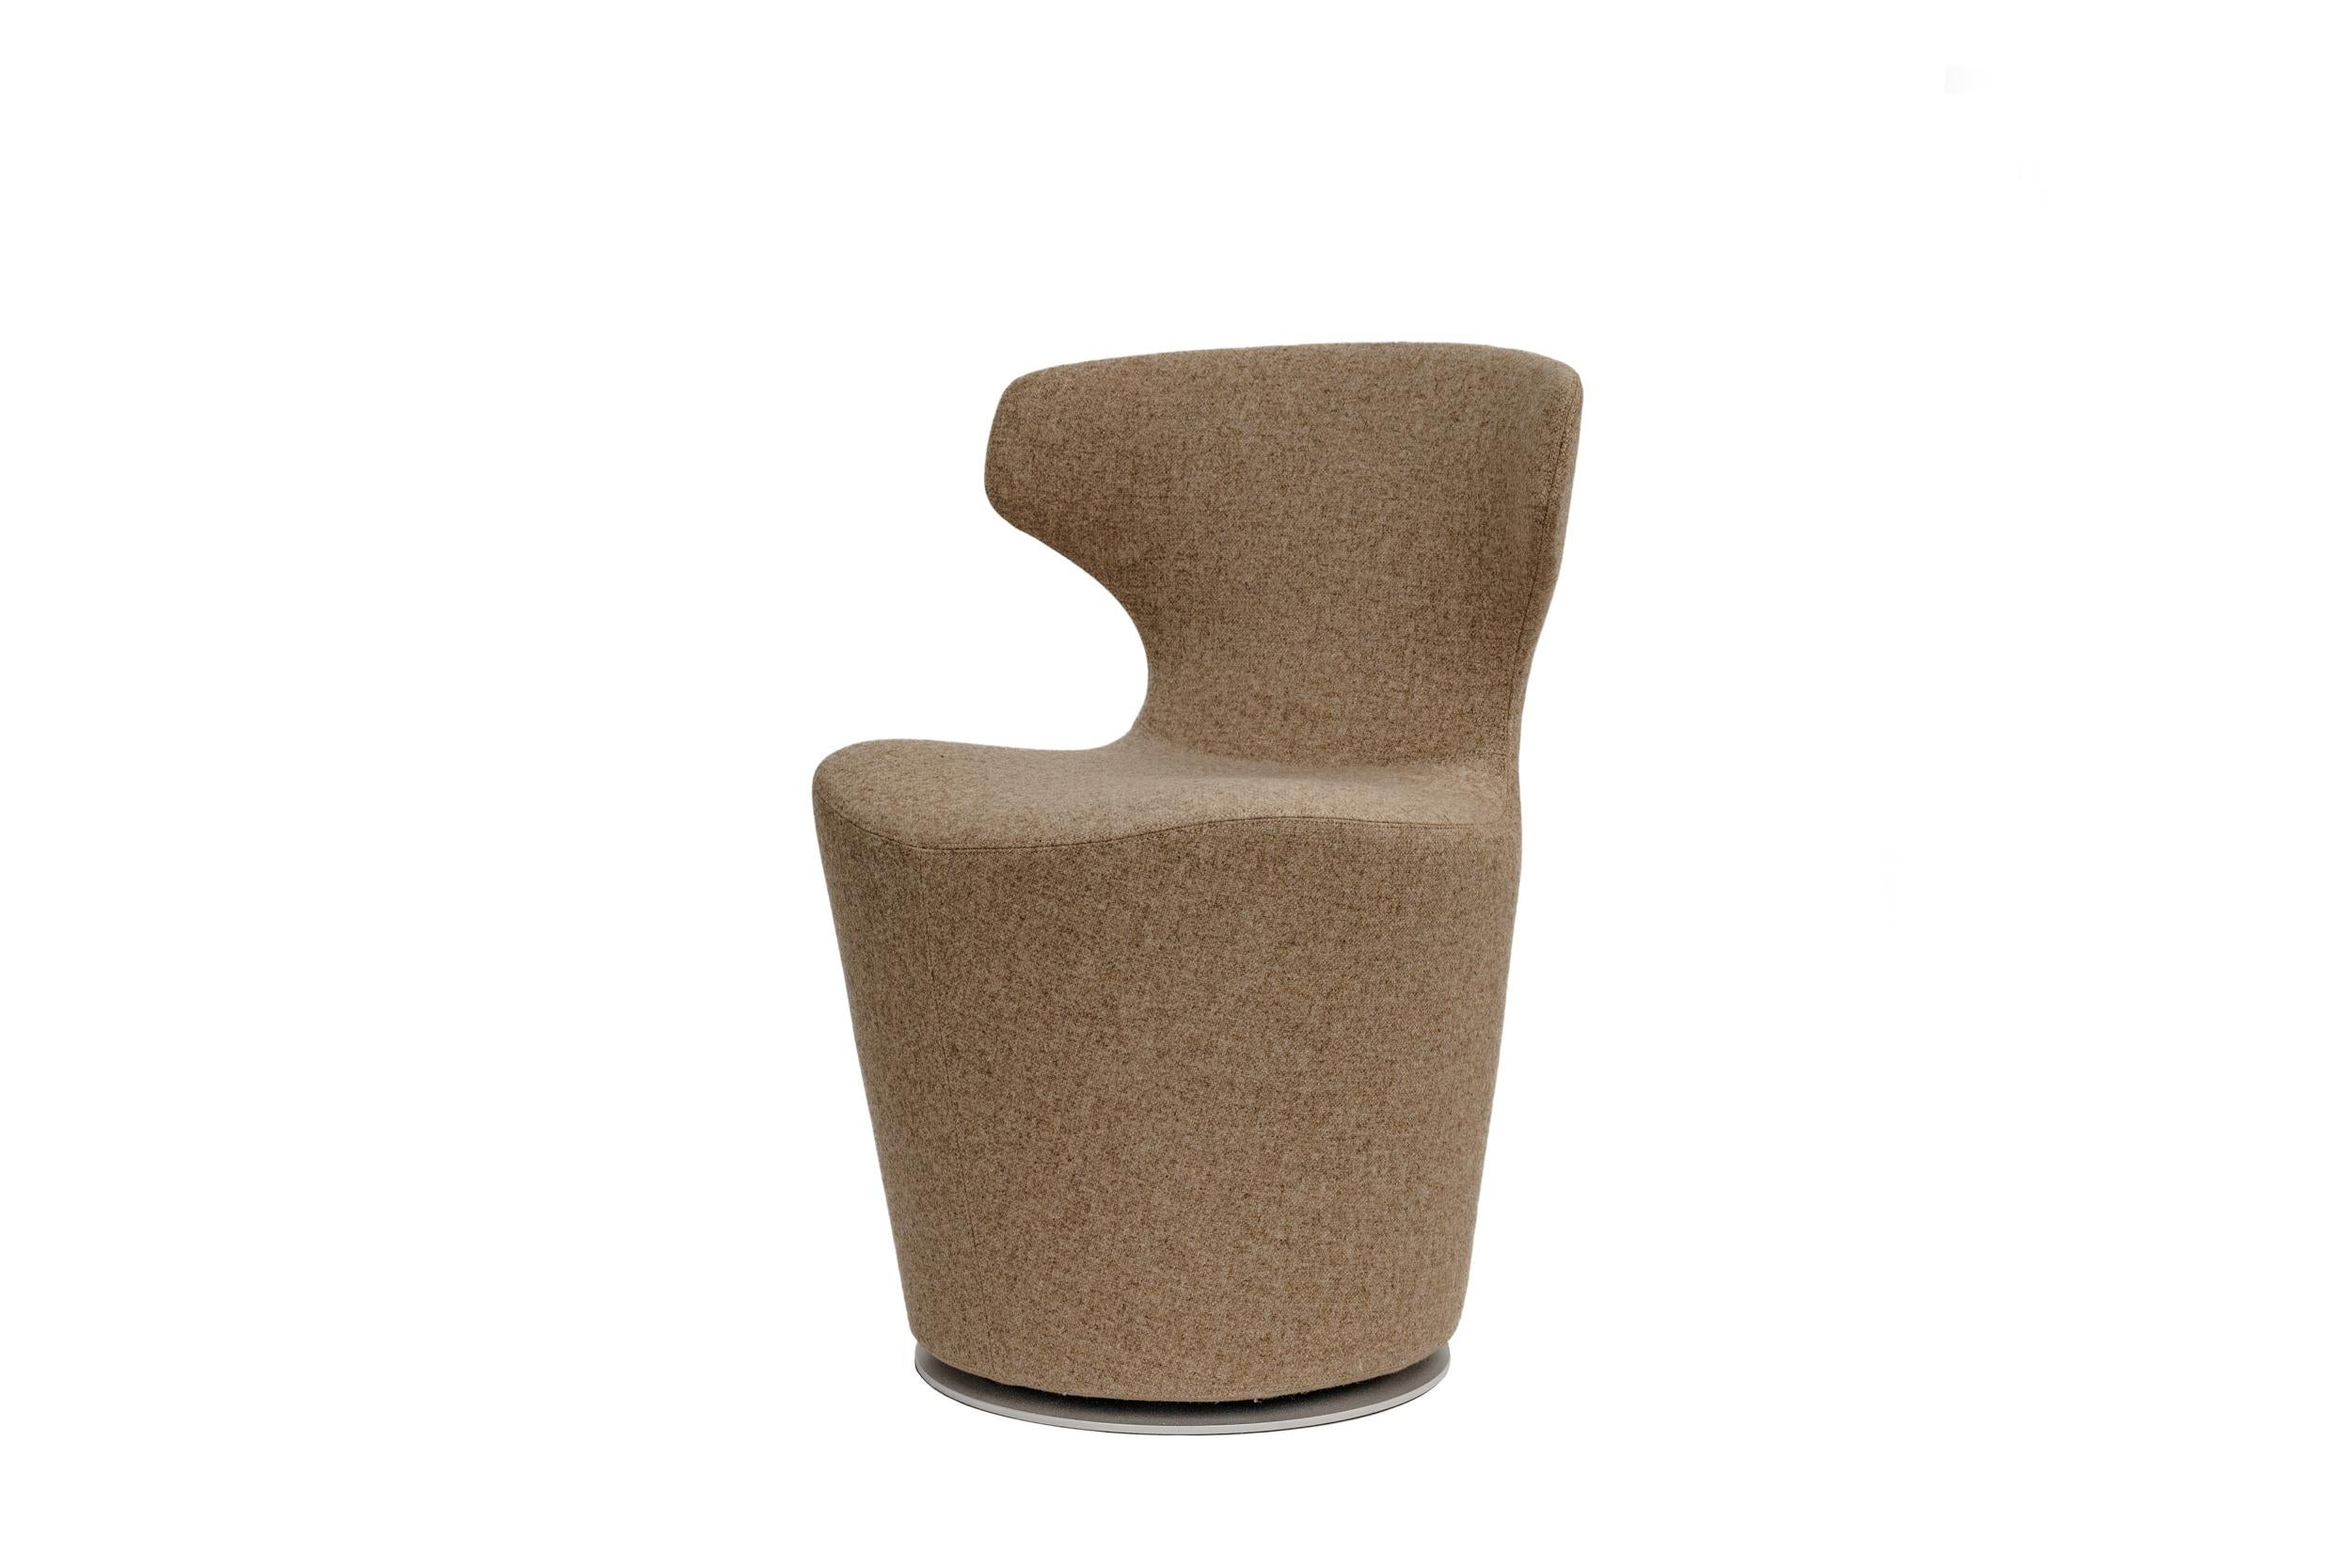 Le fauteuil Mini Papilio de B&B Italia est recouvert d'un mélange de laine beige chaud et neutre avec une fermeture éclair à l'arrière. Ce fauteuil convient aussi bien aux habitations résidentielles qu'aux espaces publics ou d'entreprise. Il reprend